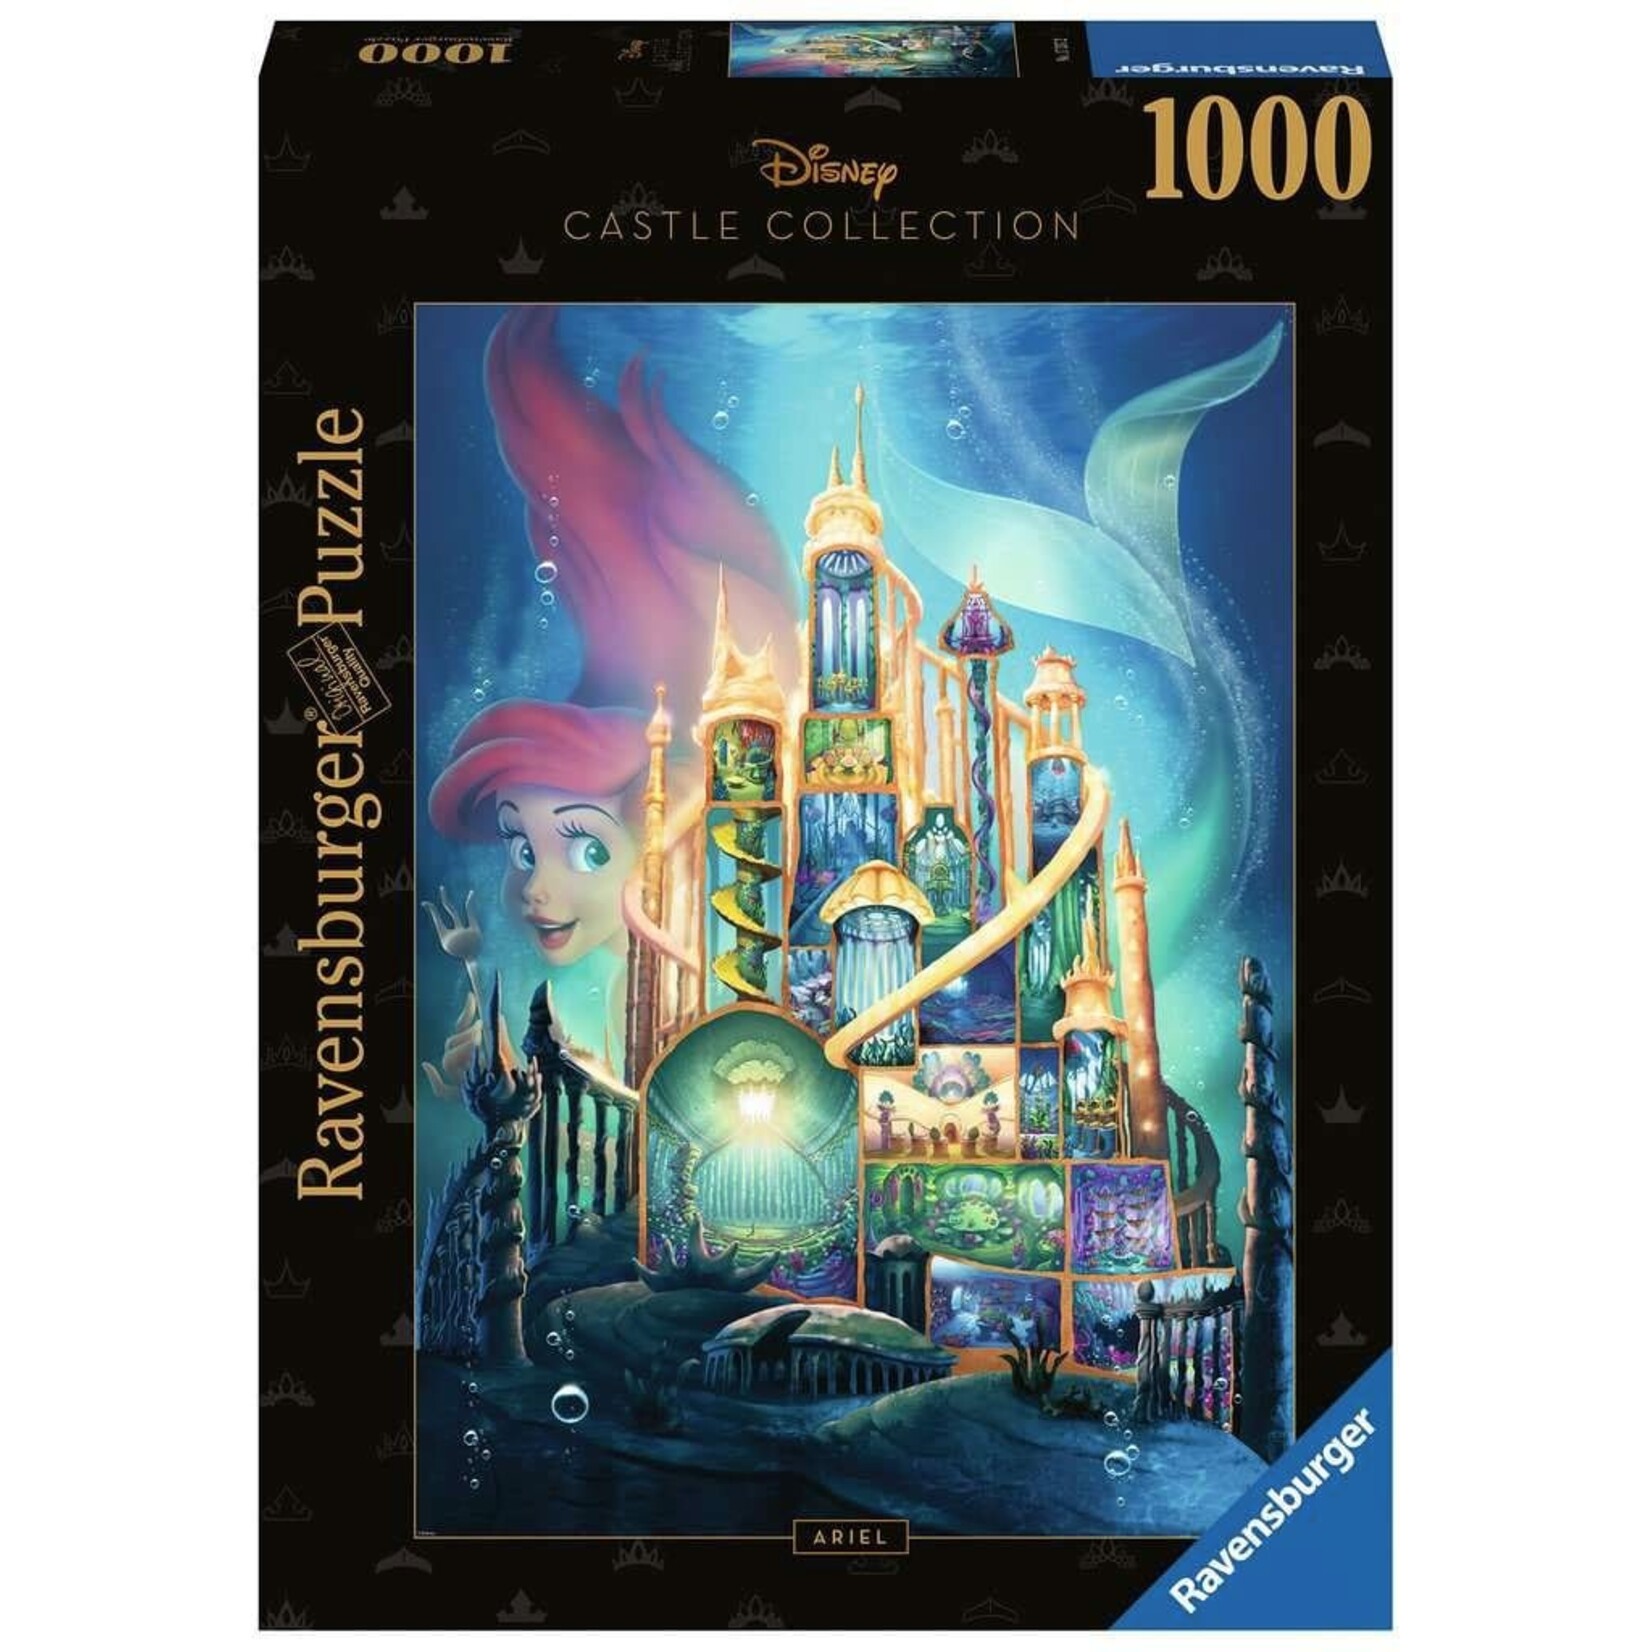 Ravensburger Ravensburger Disney Castle Collection Puzzle Ariel (The Little Mermaid) 1000 pcs